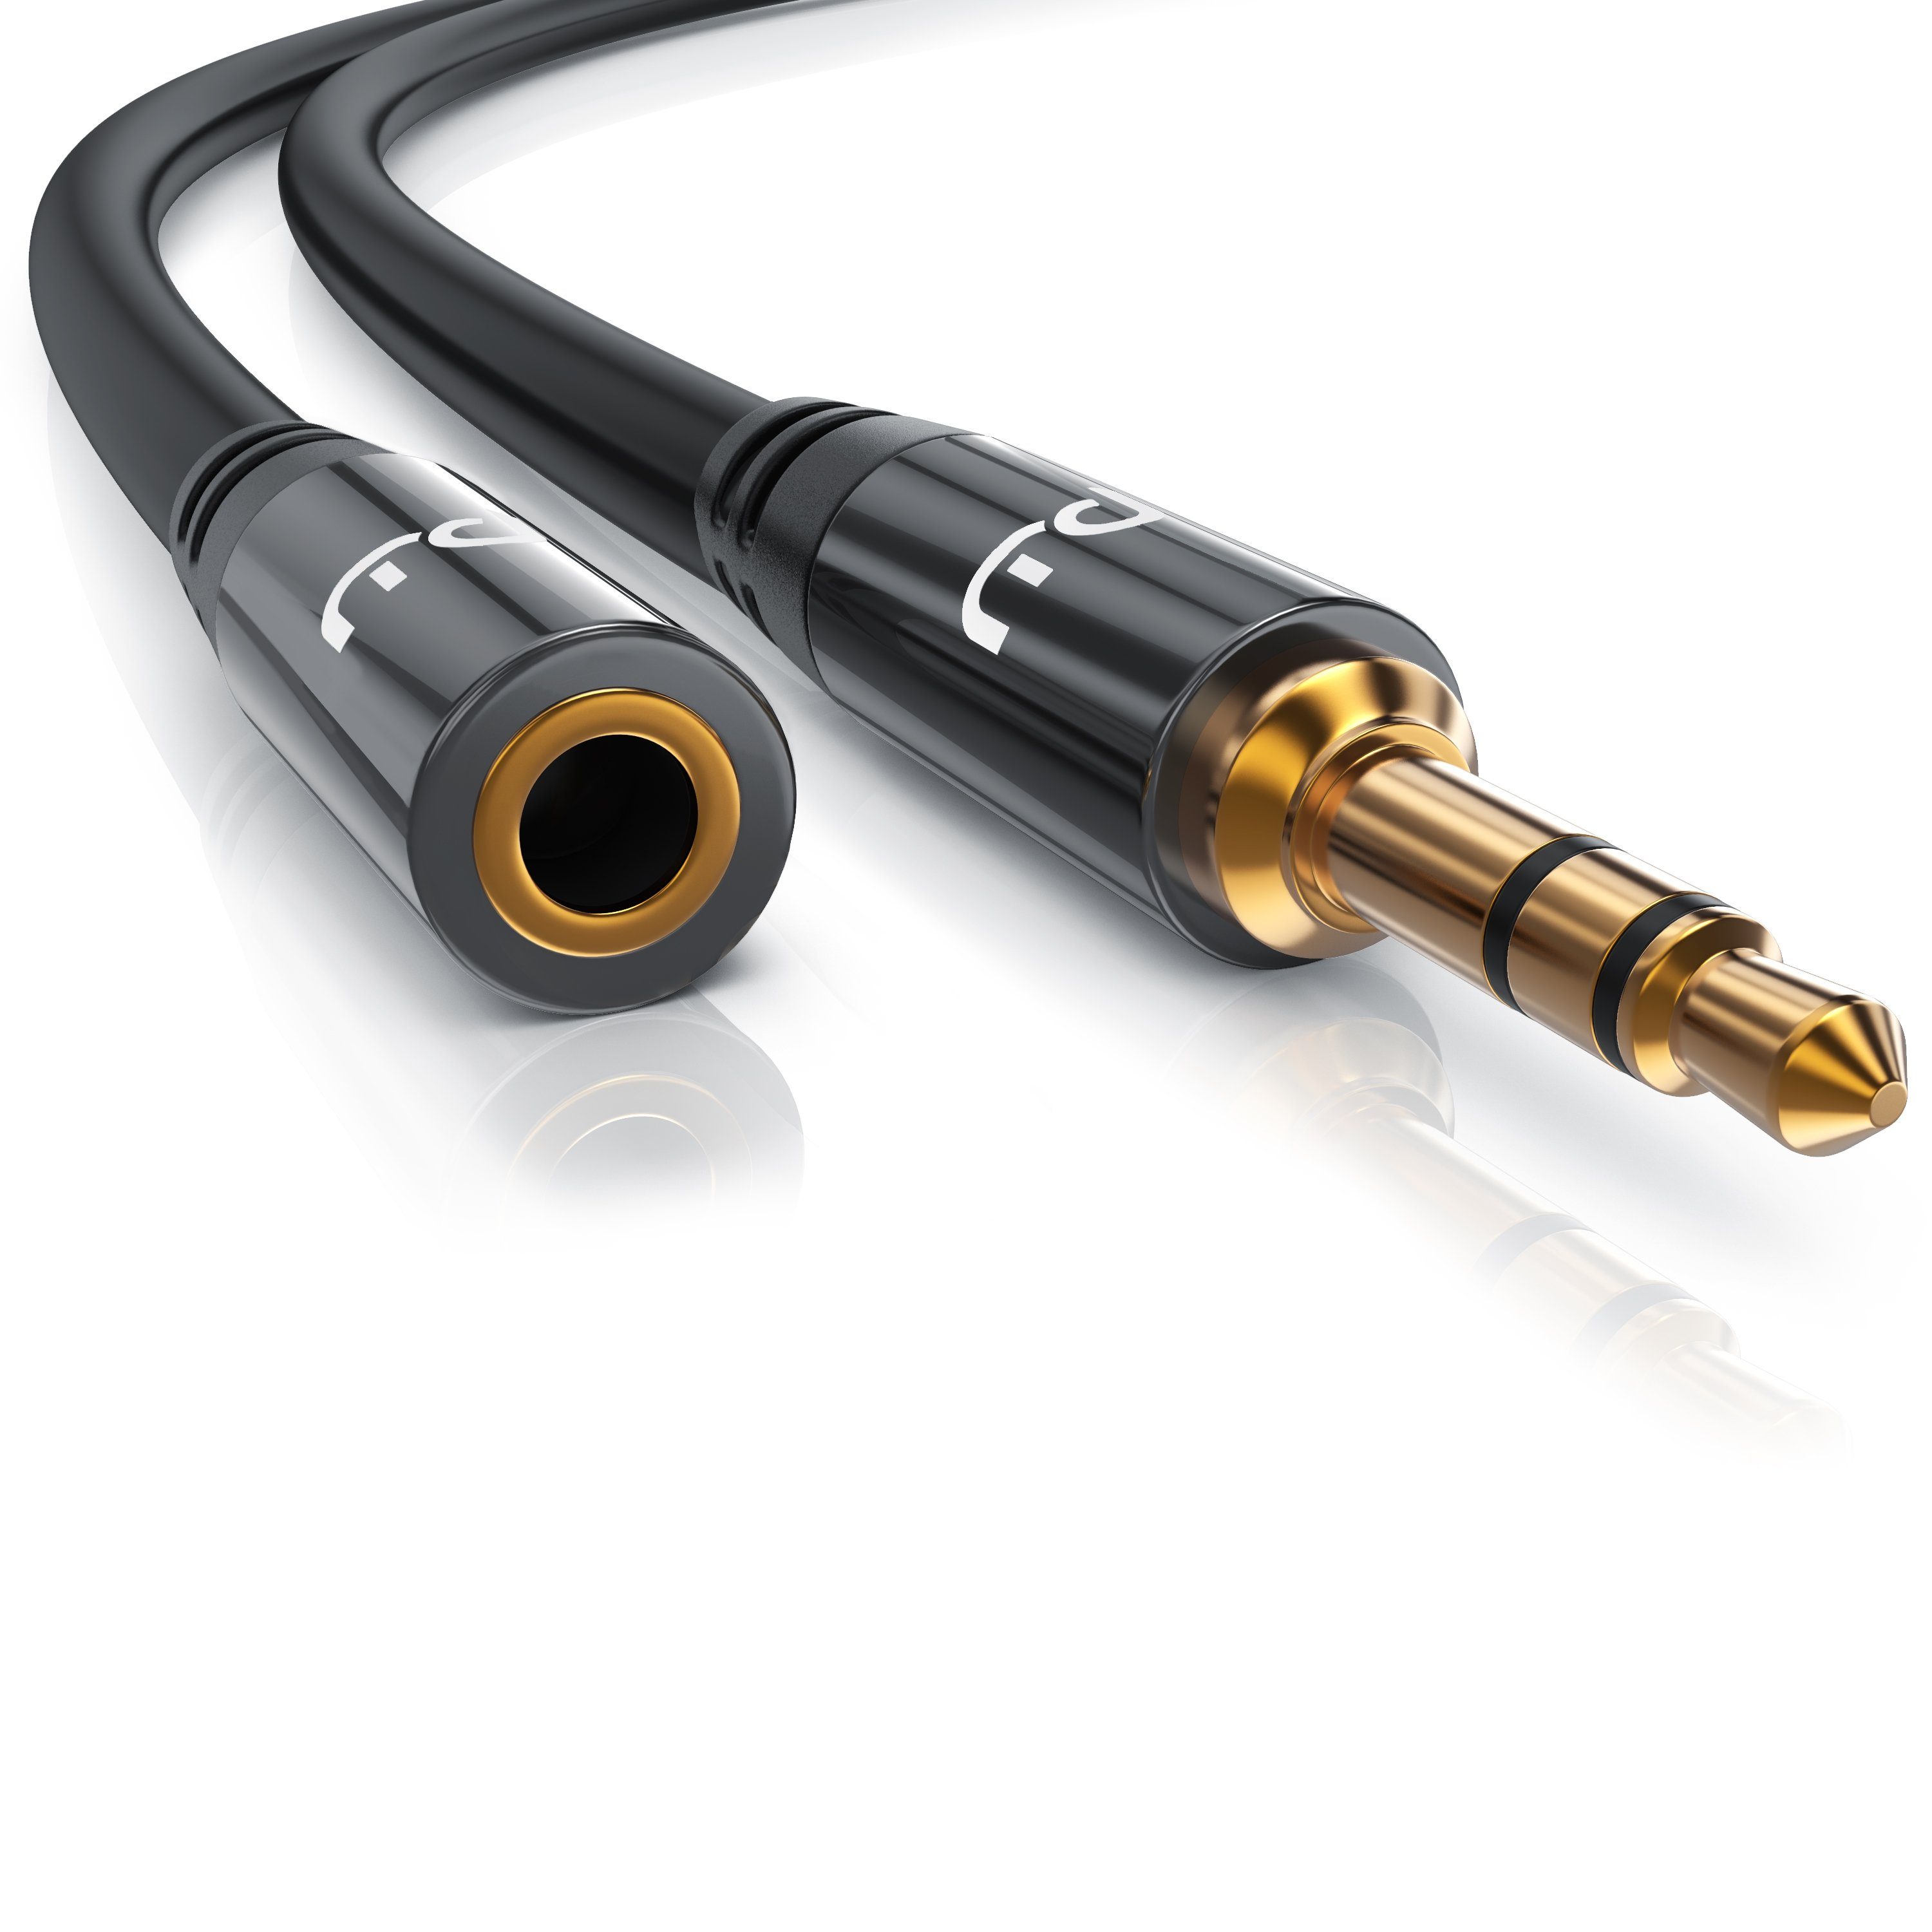 Klinke Kabel 3,5mm Stereo Stecker auf Stecker 4-Polig Audio Verlängerungskabel 